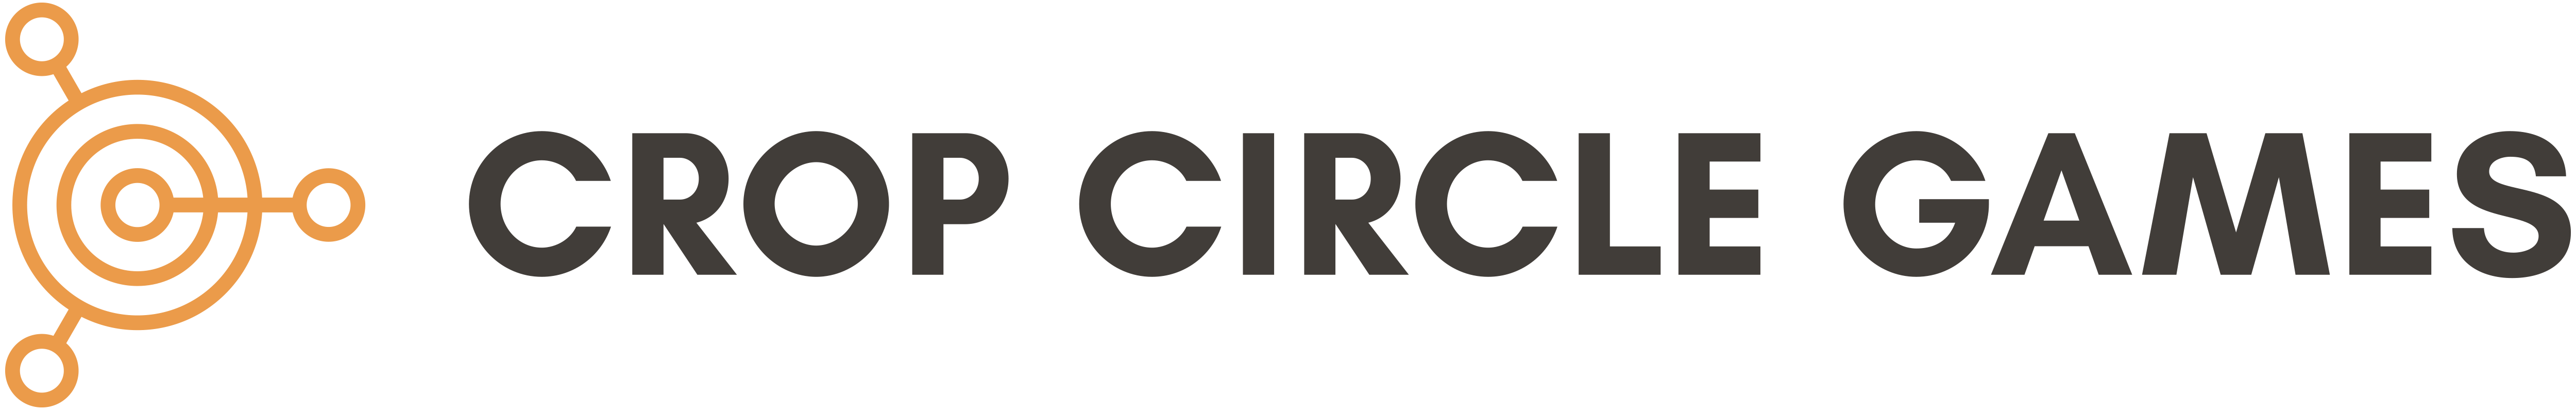 Crop Circle Games Logo